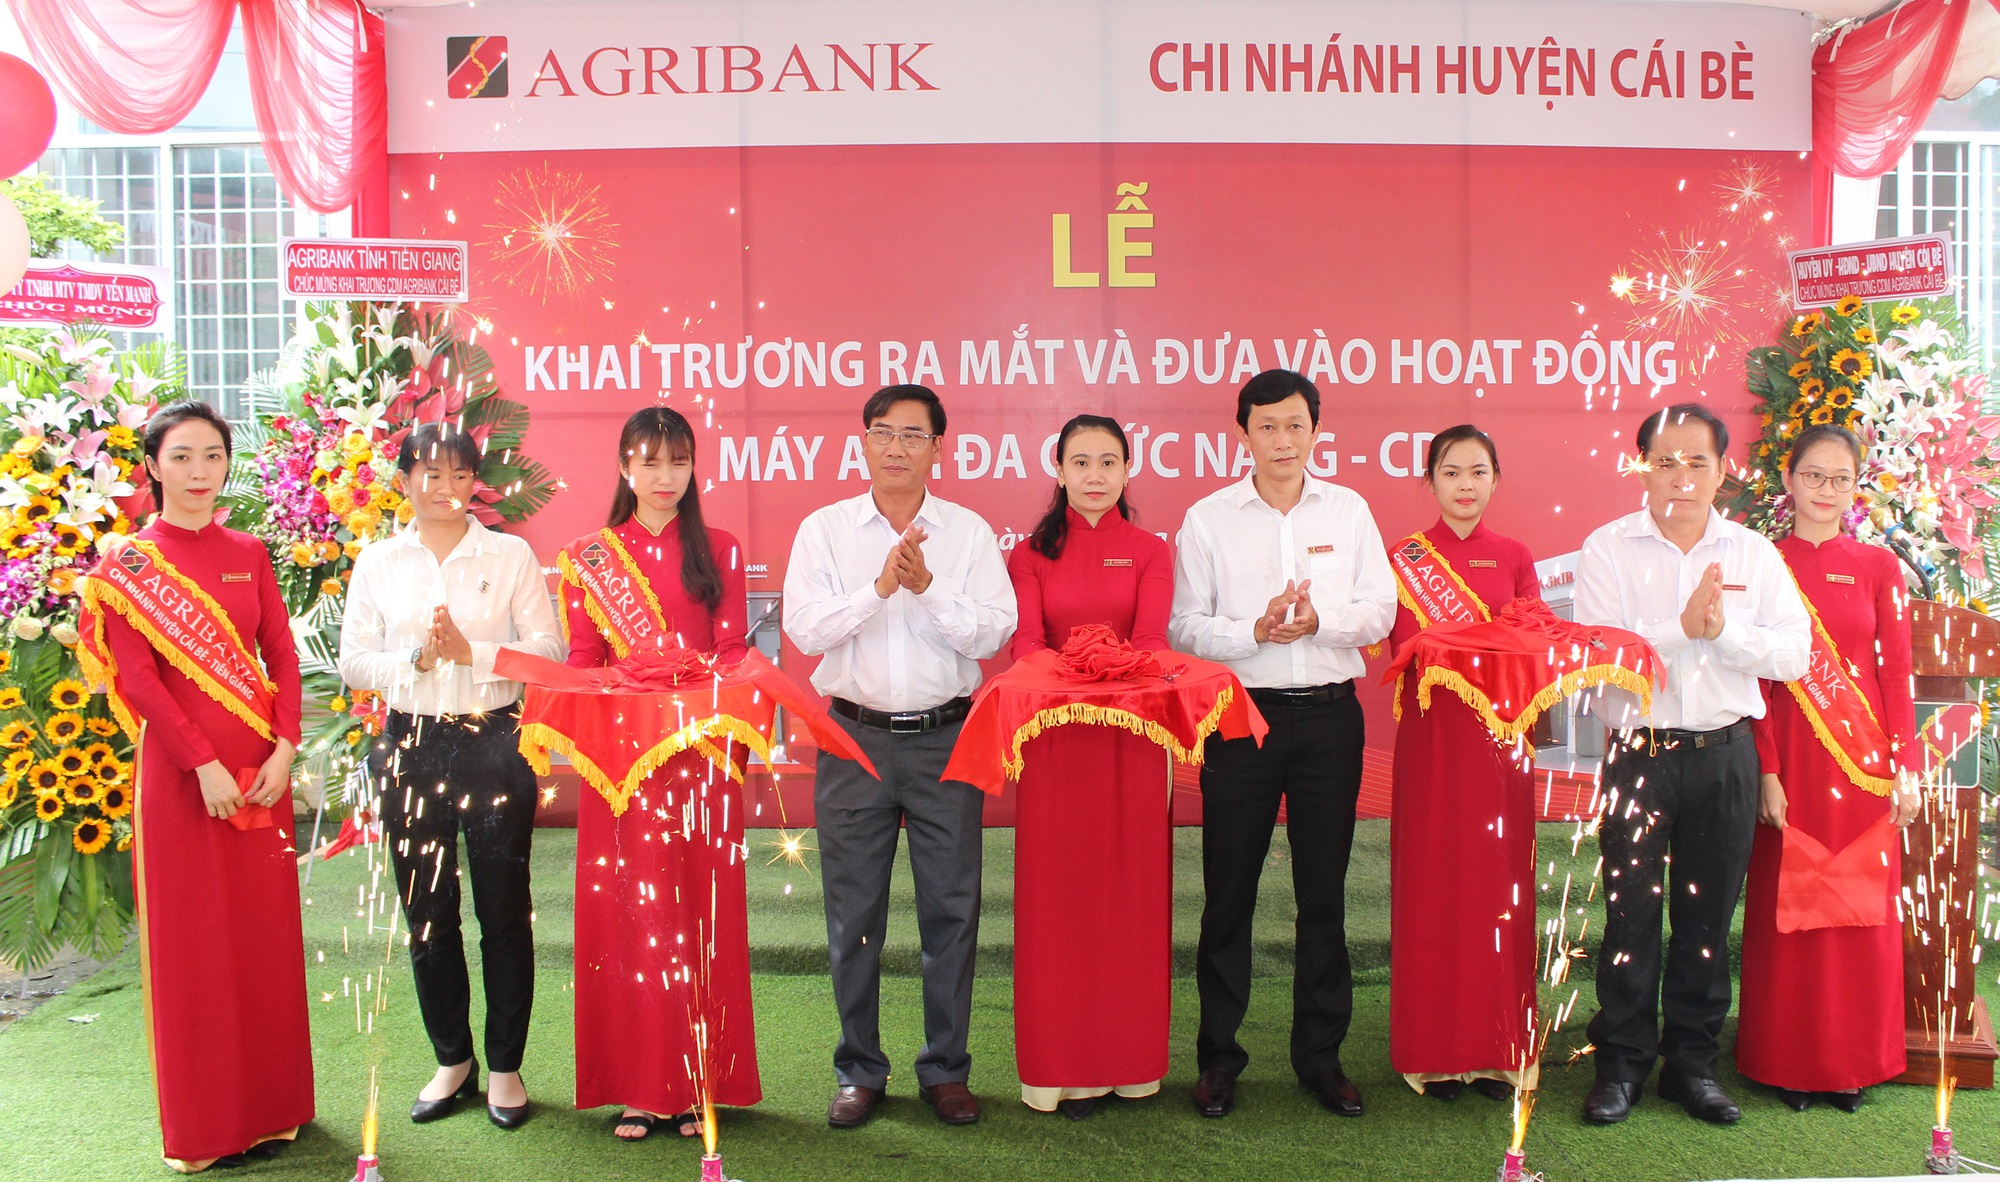 Lần đầu đưa ATM đa chức năng phục vụ người dân 2 huyện ở Tiền Giang - Ảnh 1.